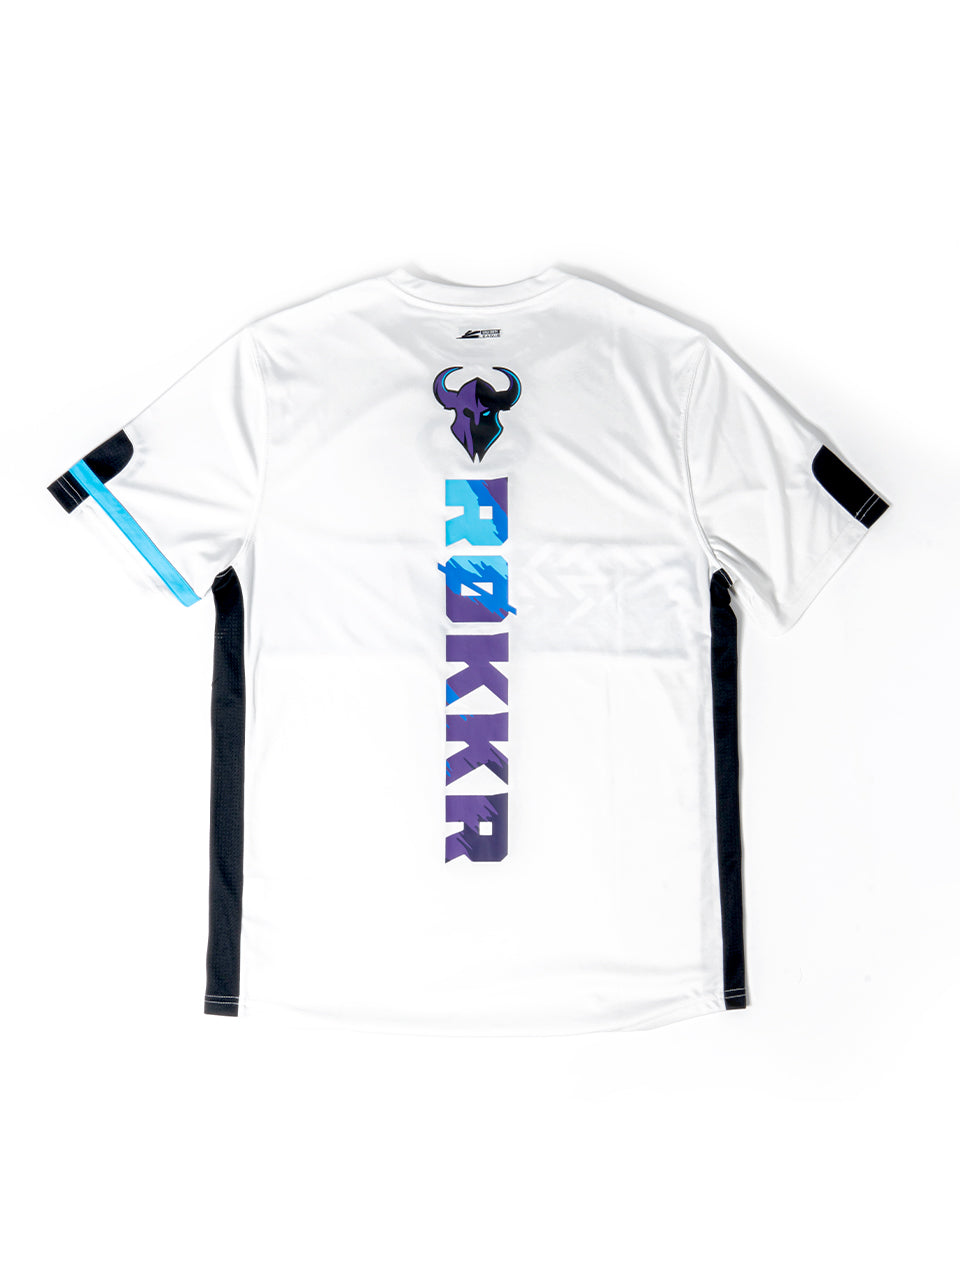 Minnesota RØKKR Official Player Kit - Jersey White